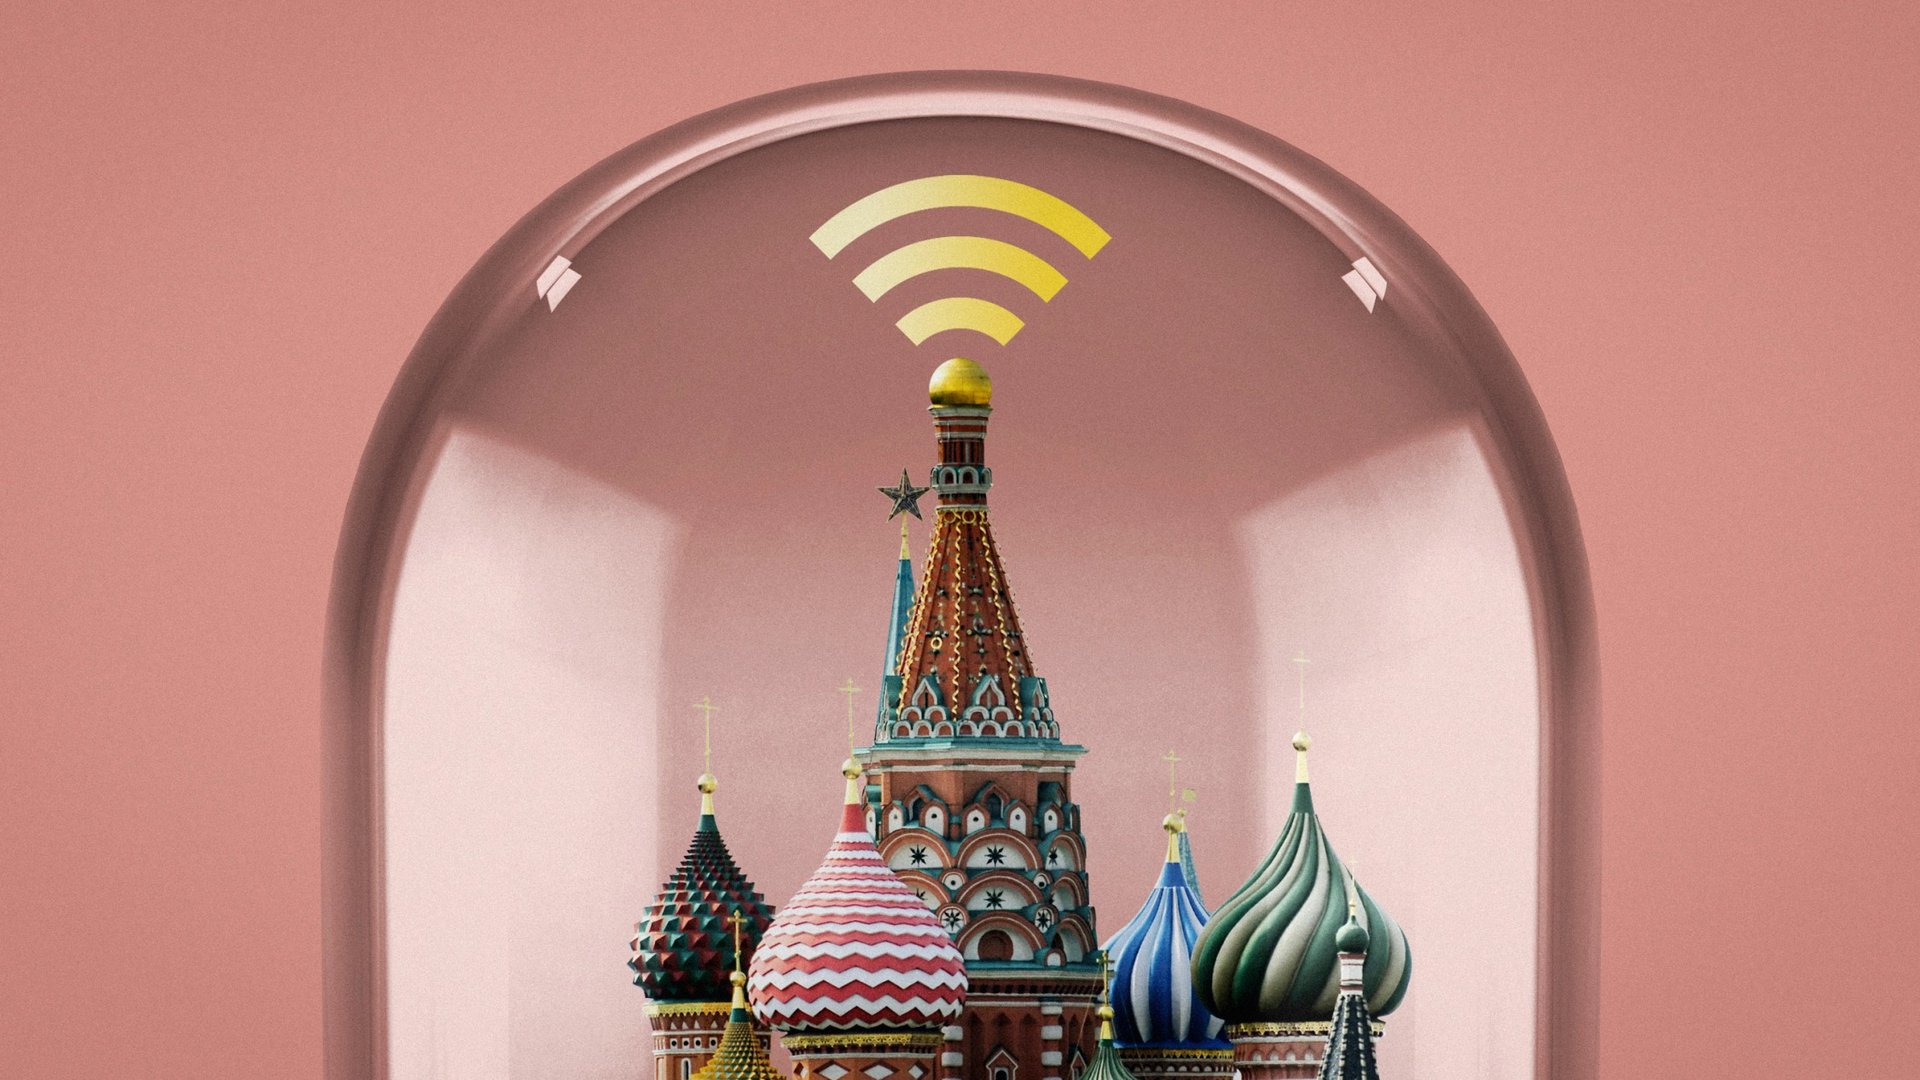 Vào năm 2019, Nga từng thử nghiệm ngắt kết nối khỏi mạng toàn cầu, và kết quả của thử nghiệm là rất thành công, theo chính phủ Nga. Ảnh: Technology Review.